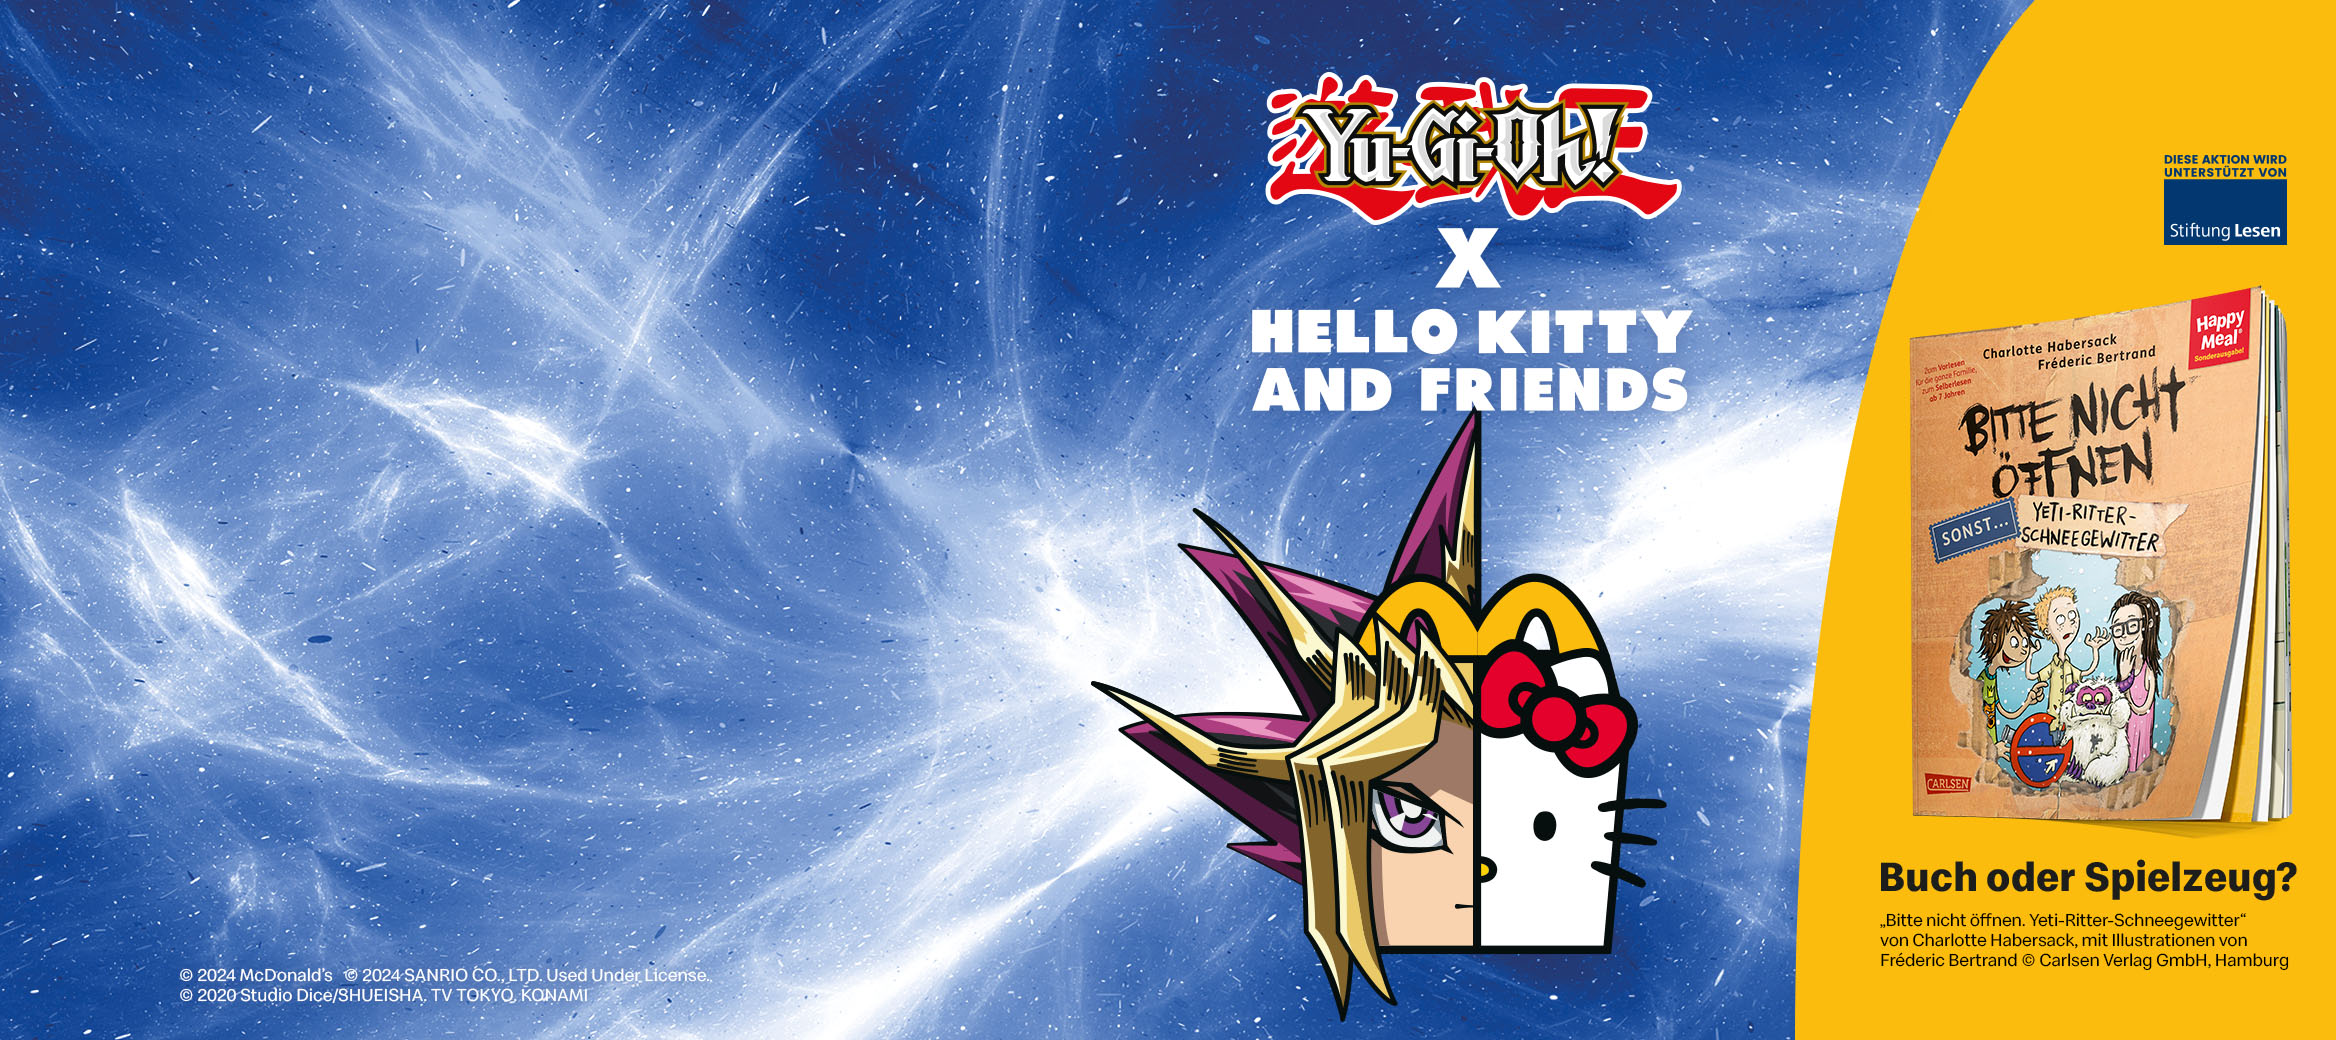 Yu-Gi-Oh und Hello Kitty, das Spendenbuch Bitte nicht öffnen